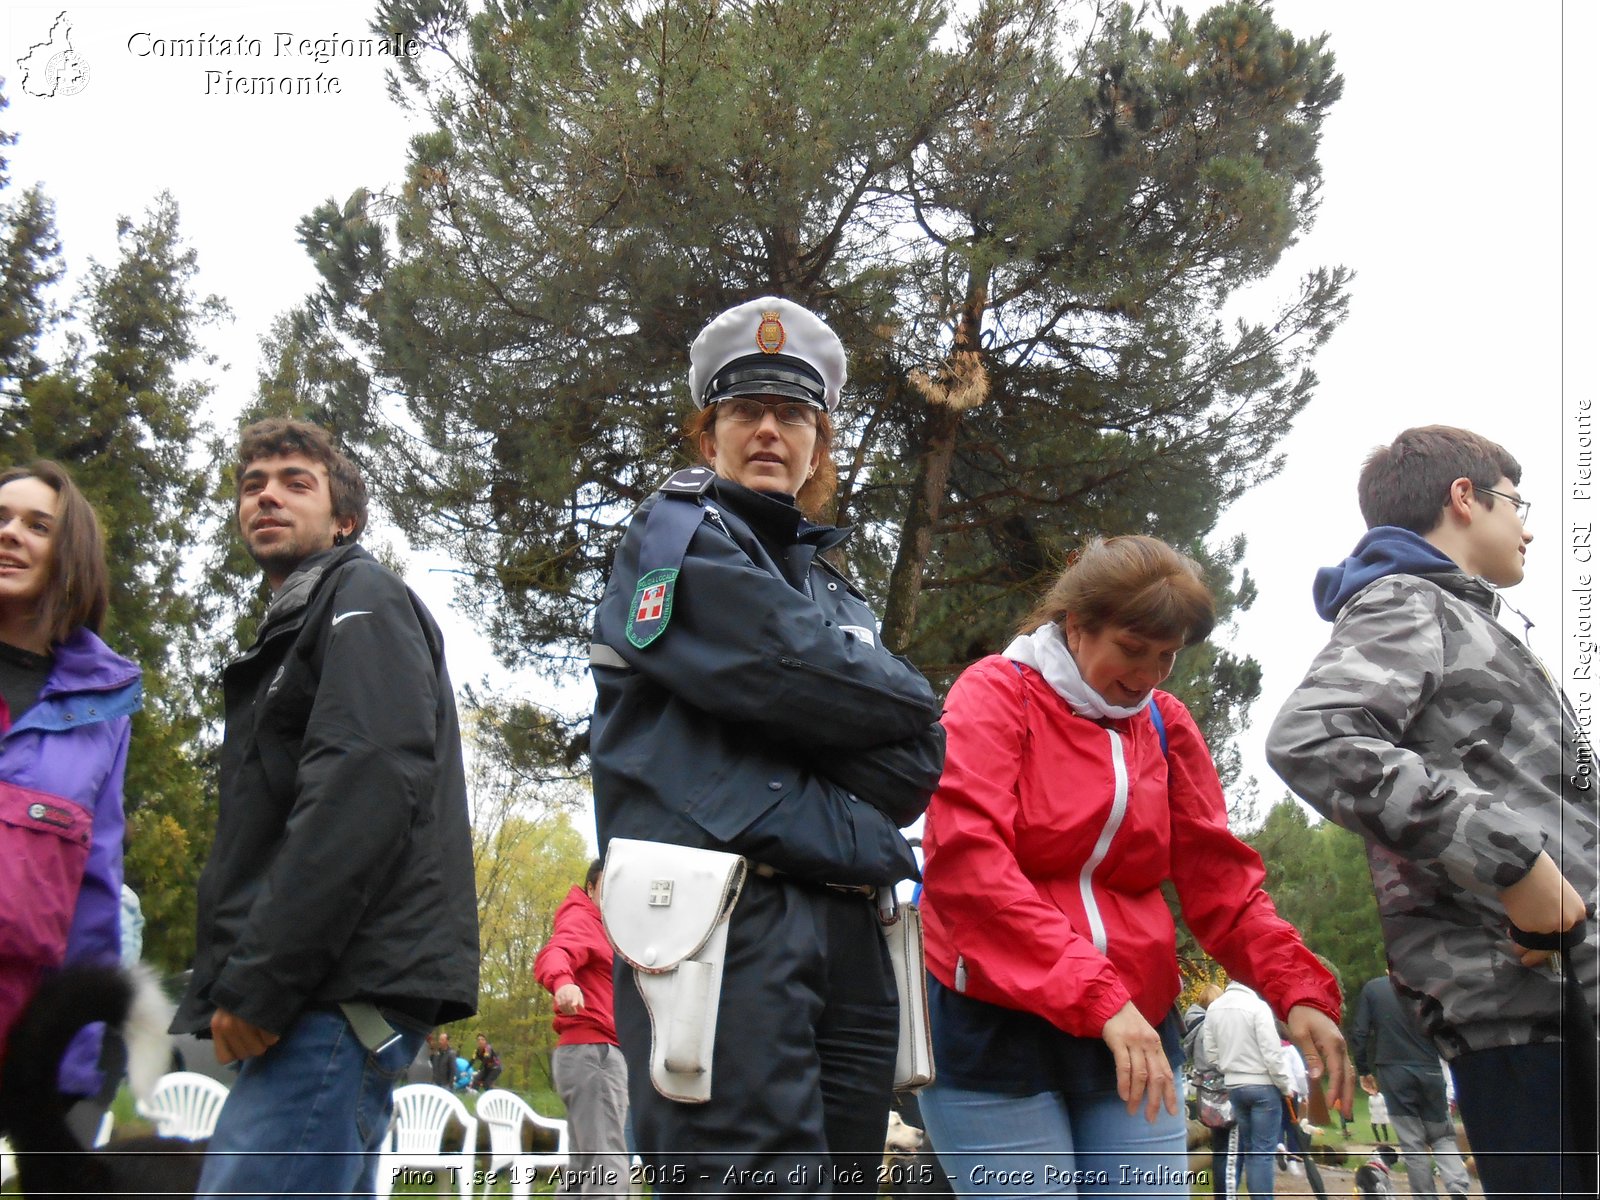 Pino T.se 19 Aprile 2015 - Arca di No 2015 - Croce Rossa Italiana- Comitato Regionale del Piemonte